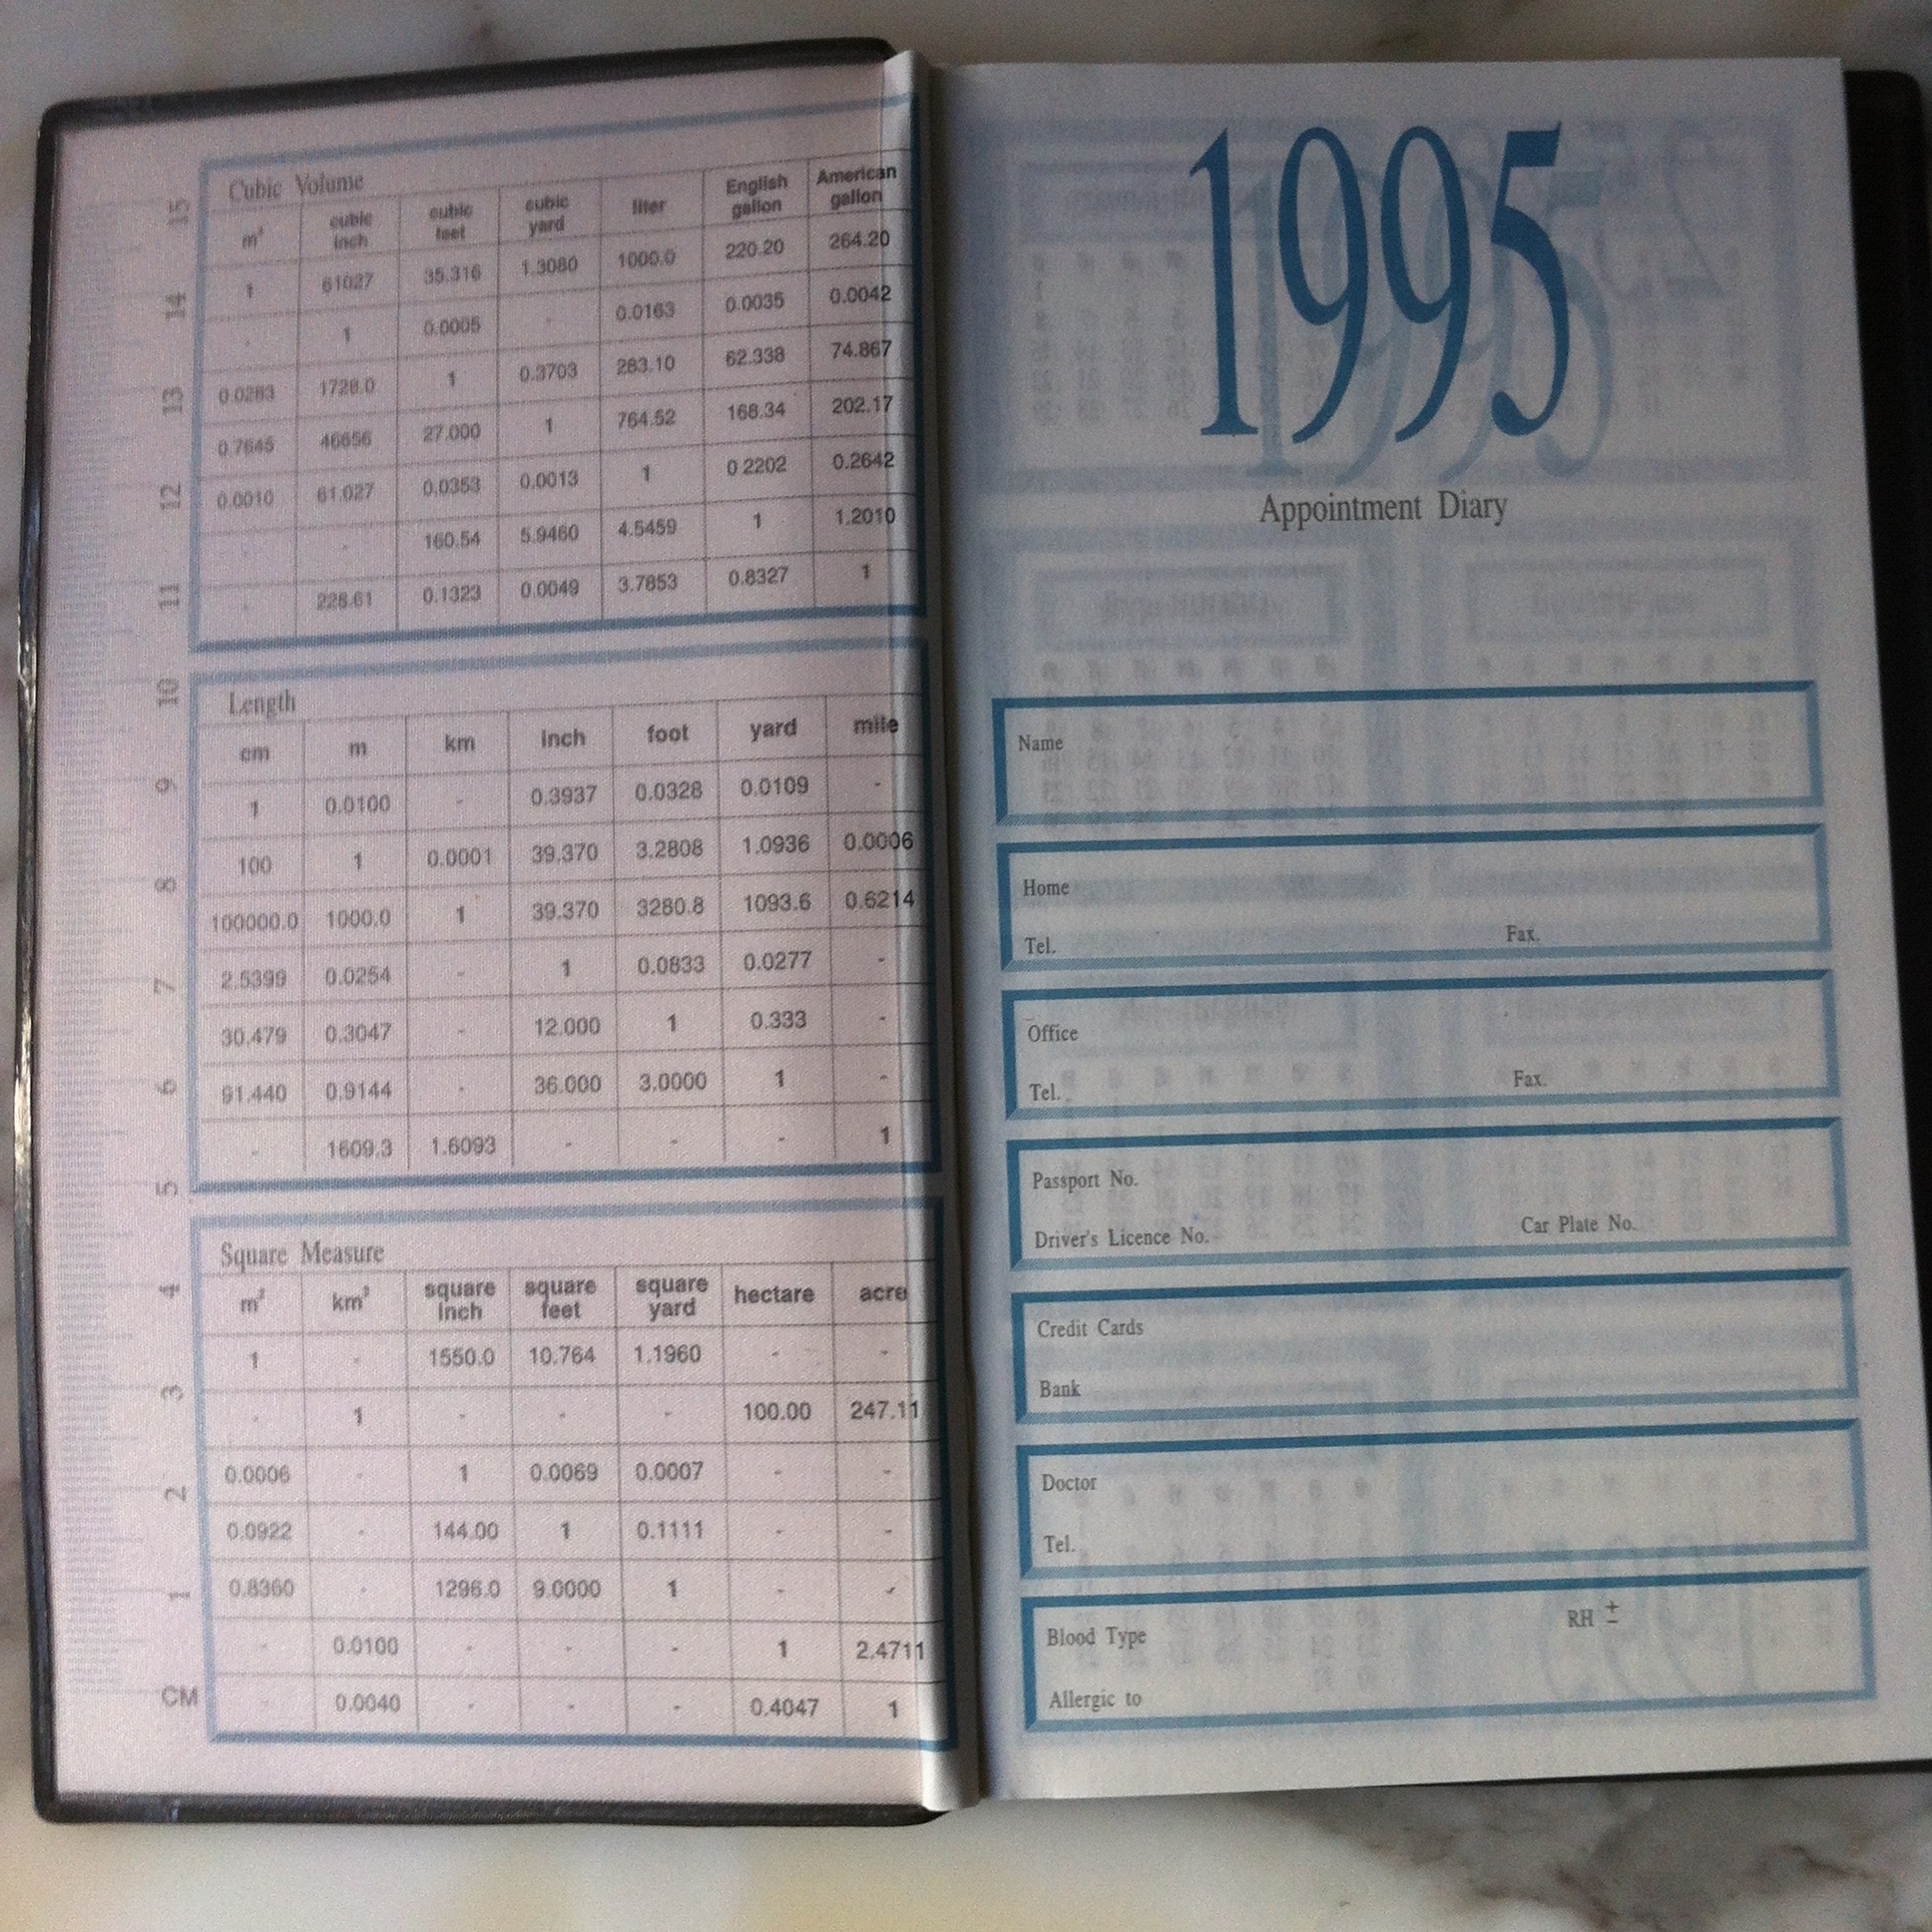 Записная книжка Таиланд  1995 год с Тайским календарем в пластиковой обложке (снимается) Новый чистый.  Английский и тайский язык . Календари на 1995 год ( 2538 буддийский год ) .   Сделано в Таиланде . 